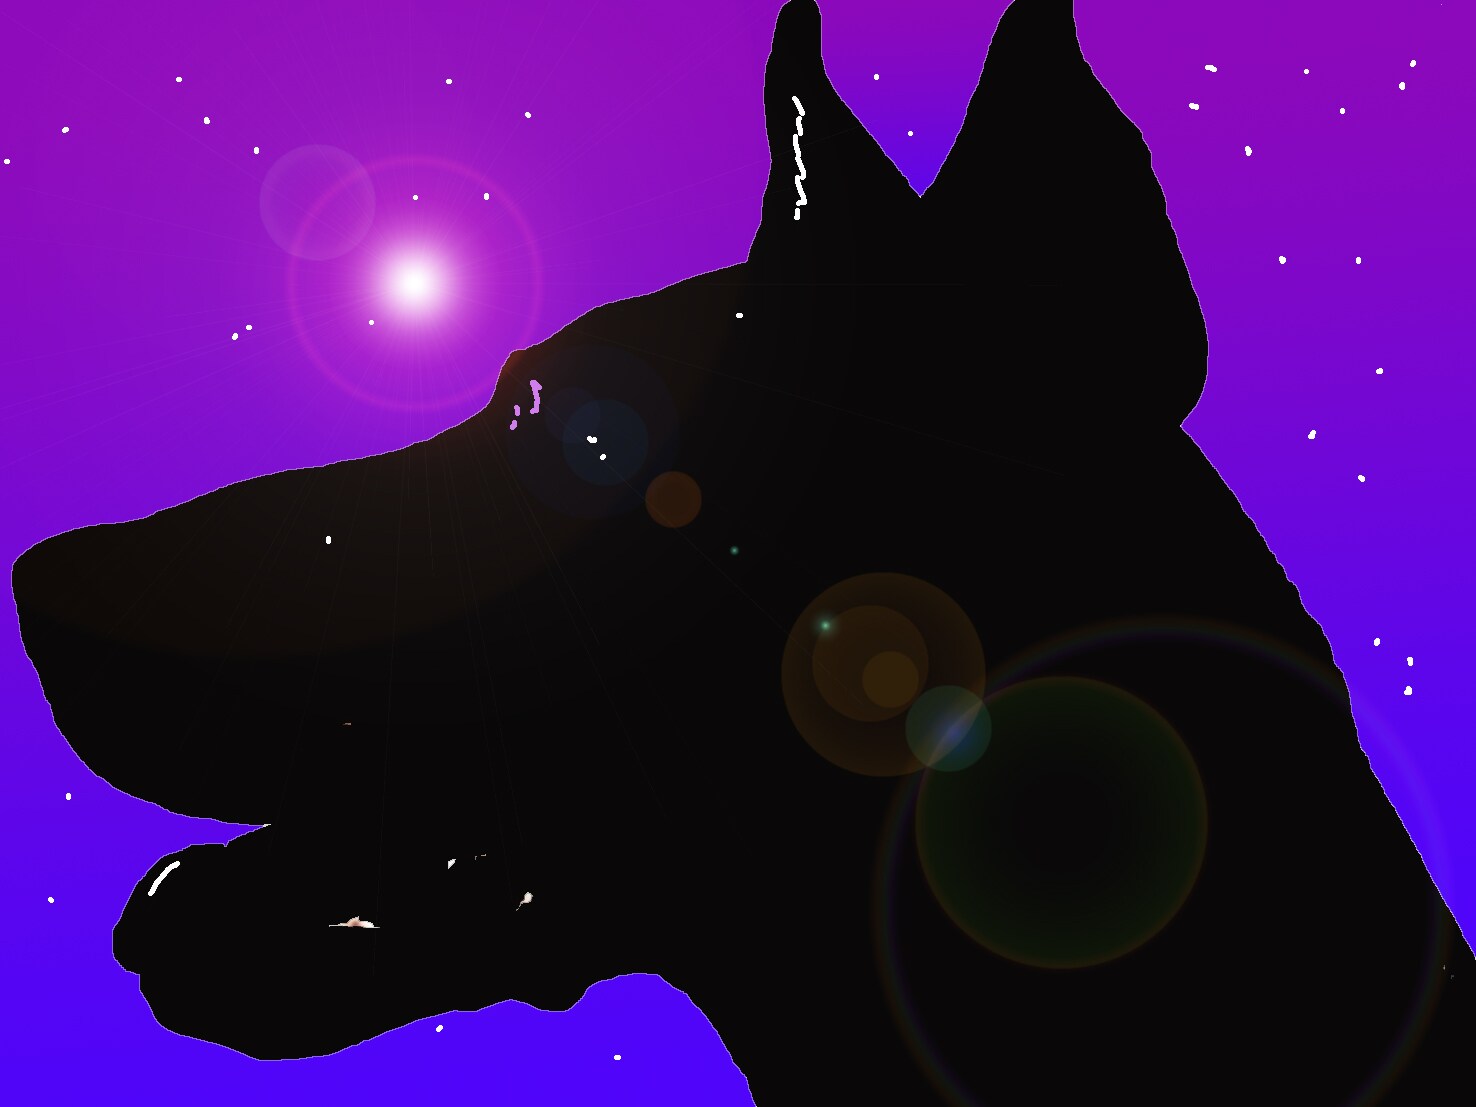 Immagine di un dobermann (Per leggerne la descrizione proseguire nel link). Il profilo della testa del cane nell'oscurità e sullo sfondo una notte stellata.